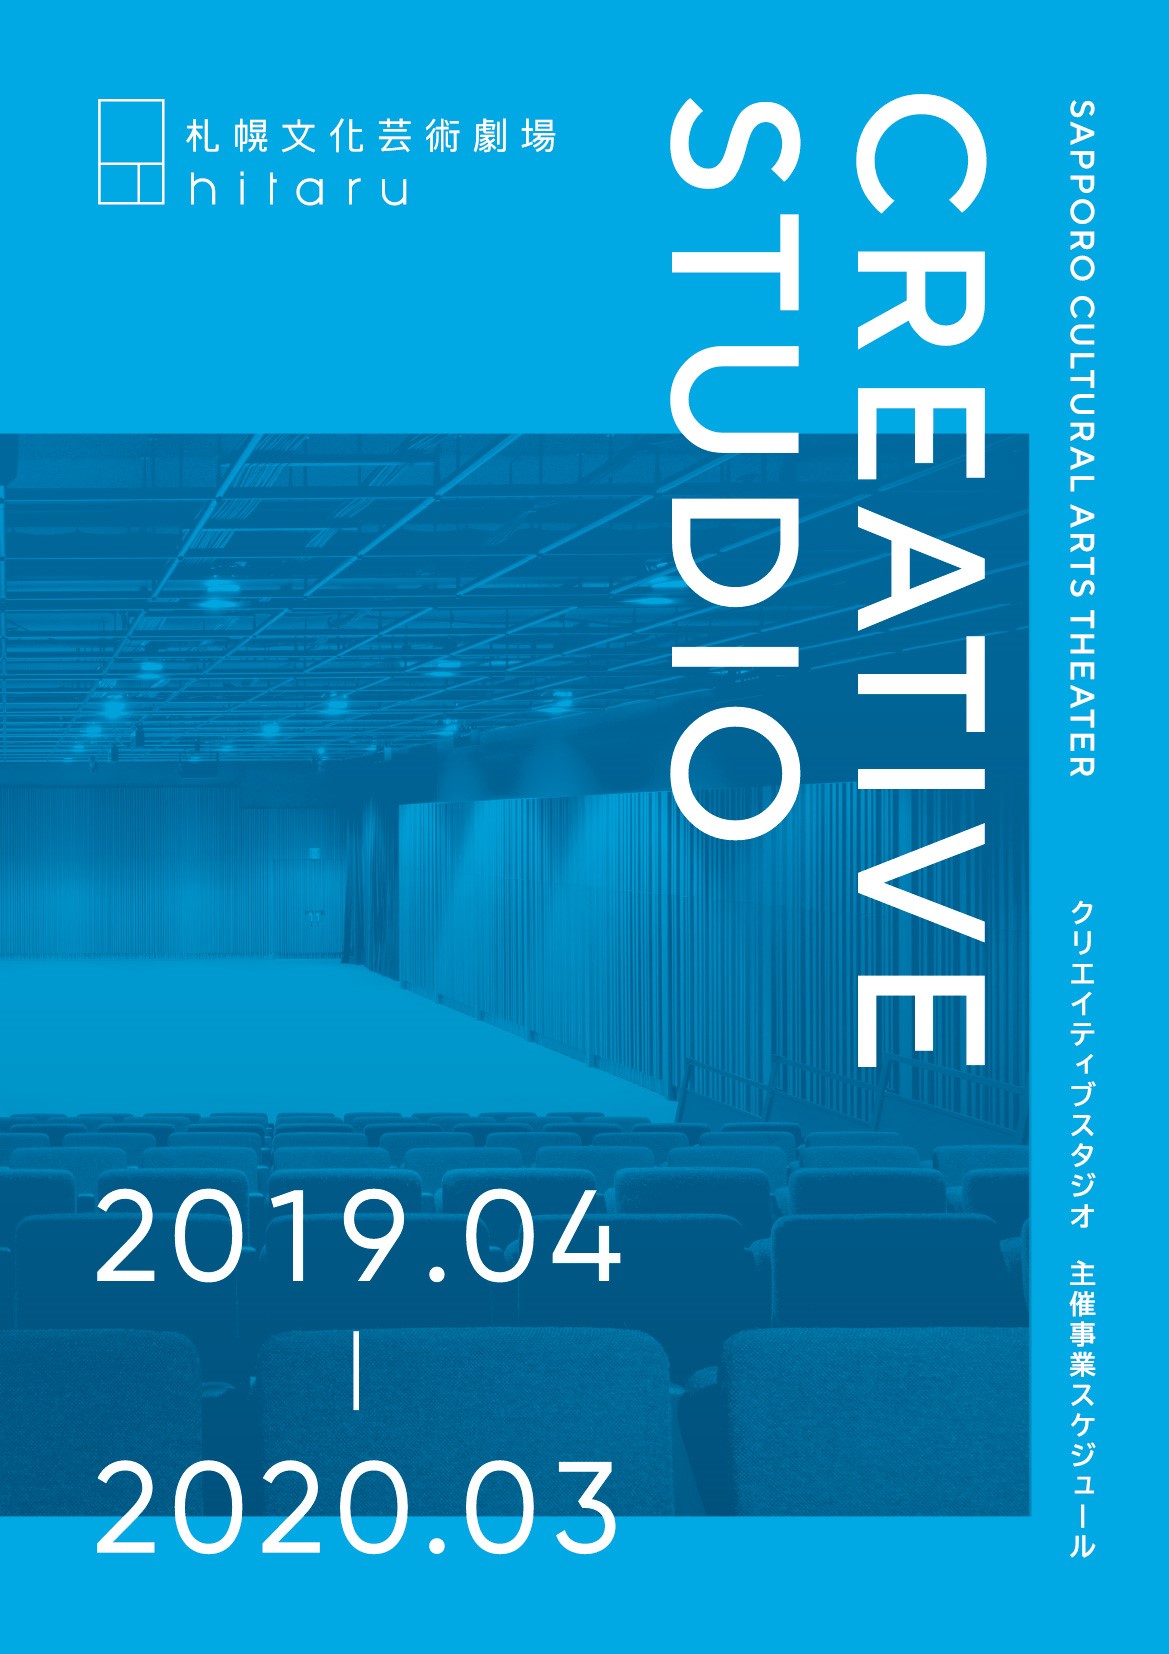 クリエイティブスタジオ2019年4月 - 2020年3月 主催事業スケジュール 発表イメージ1枚目